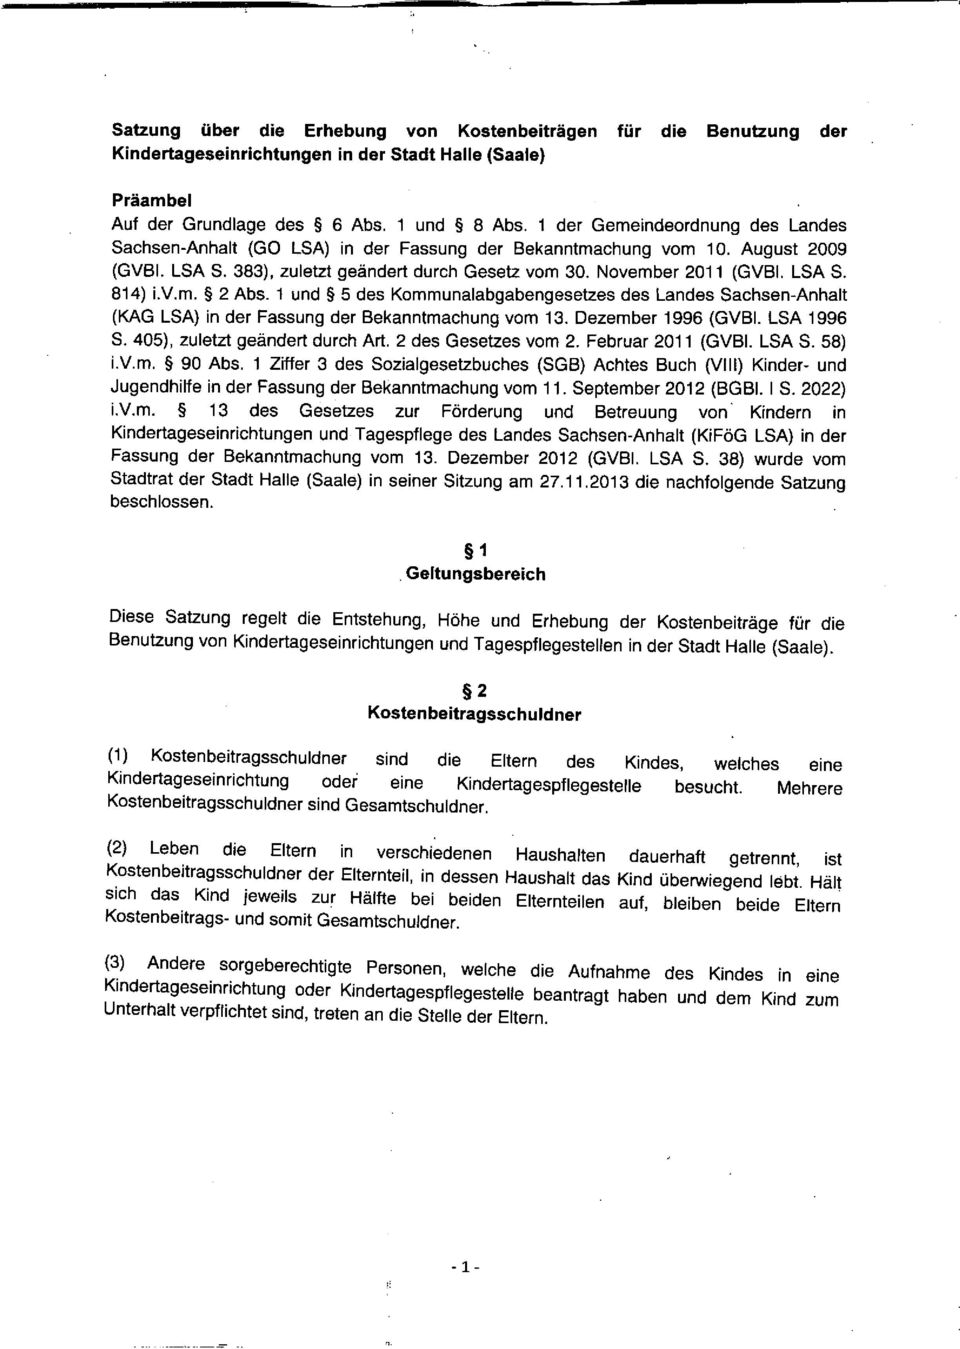 m.!l 2 Abs. 1 und!l 5 des Kommunalabgabengesetzes des Landes Sachsen-Anhalt (KAG LSA) in der Fassung der Bekanntmachung vom 13. Dezember 1996 (GVBI. LSA 1996 S. 405), zuletzt geändert durch Art.